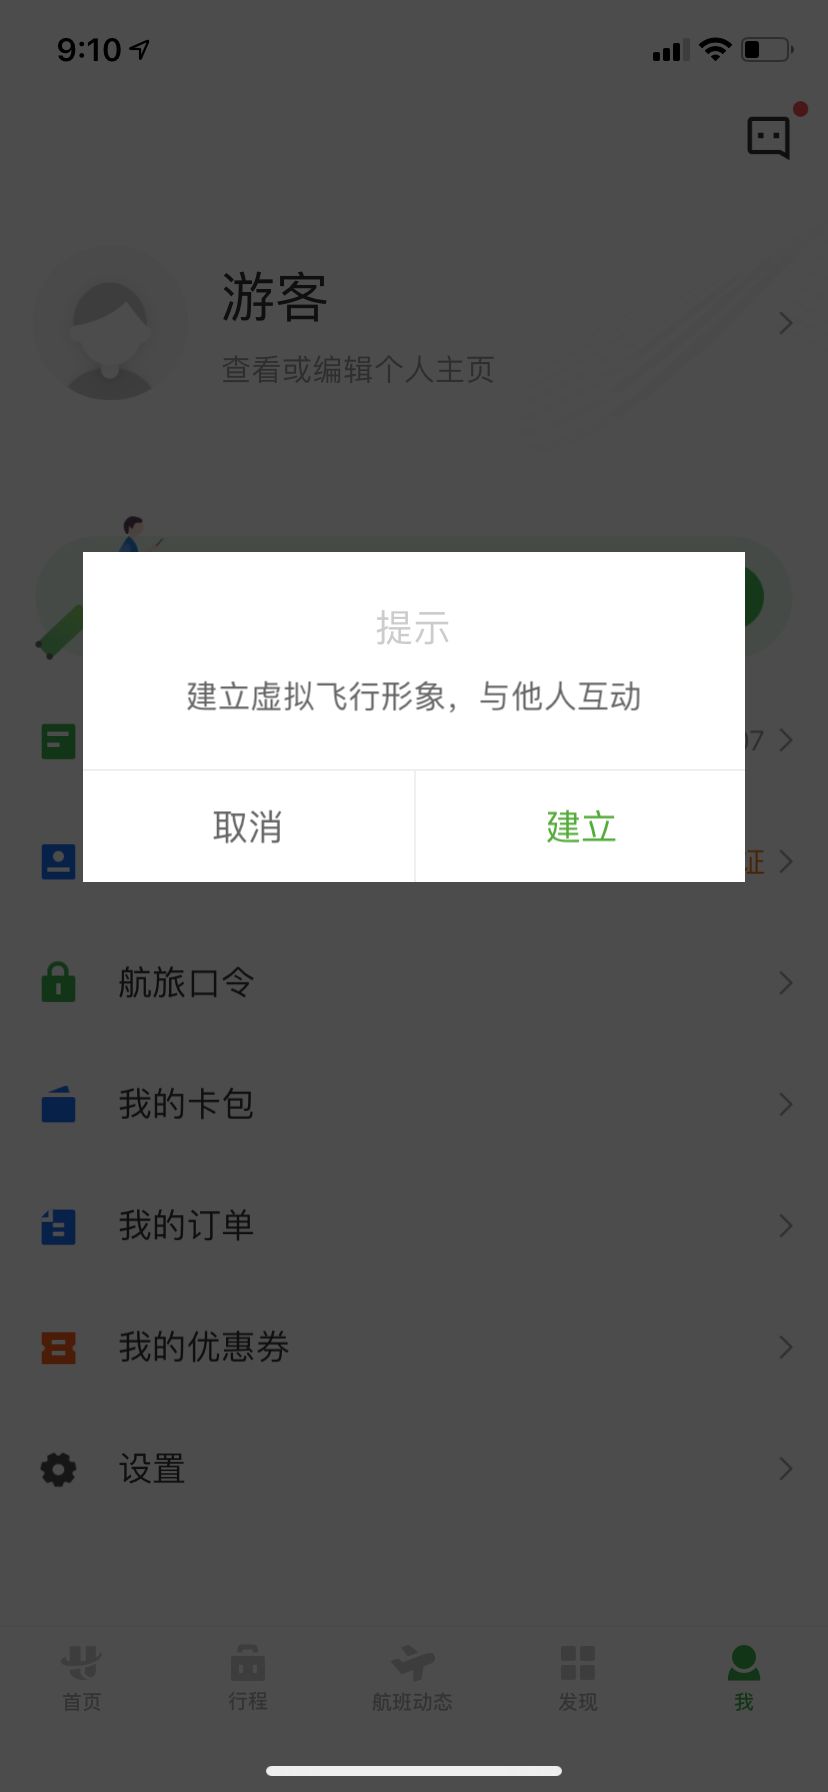 飞机app下载中文版最新版本苹果[飞机app下载中文版最新版本苹果手机]